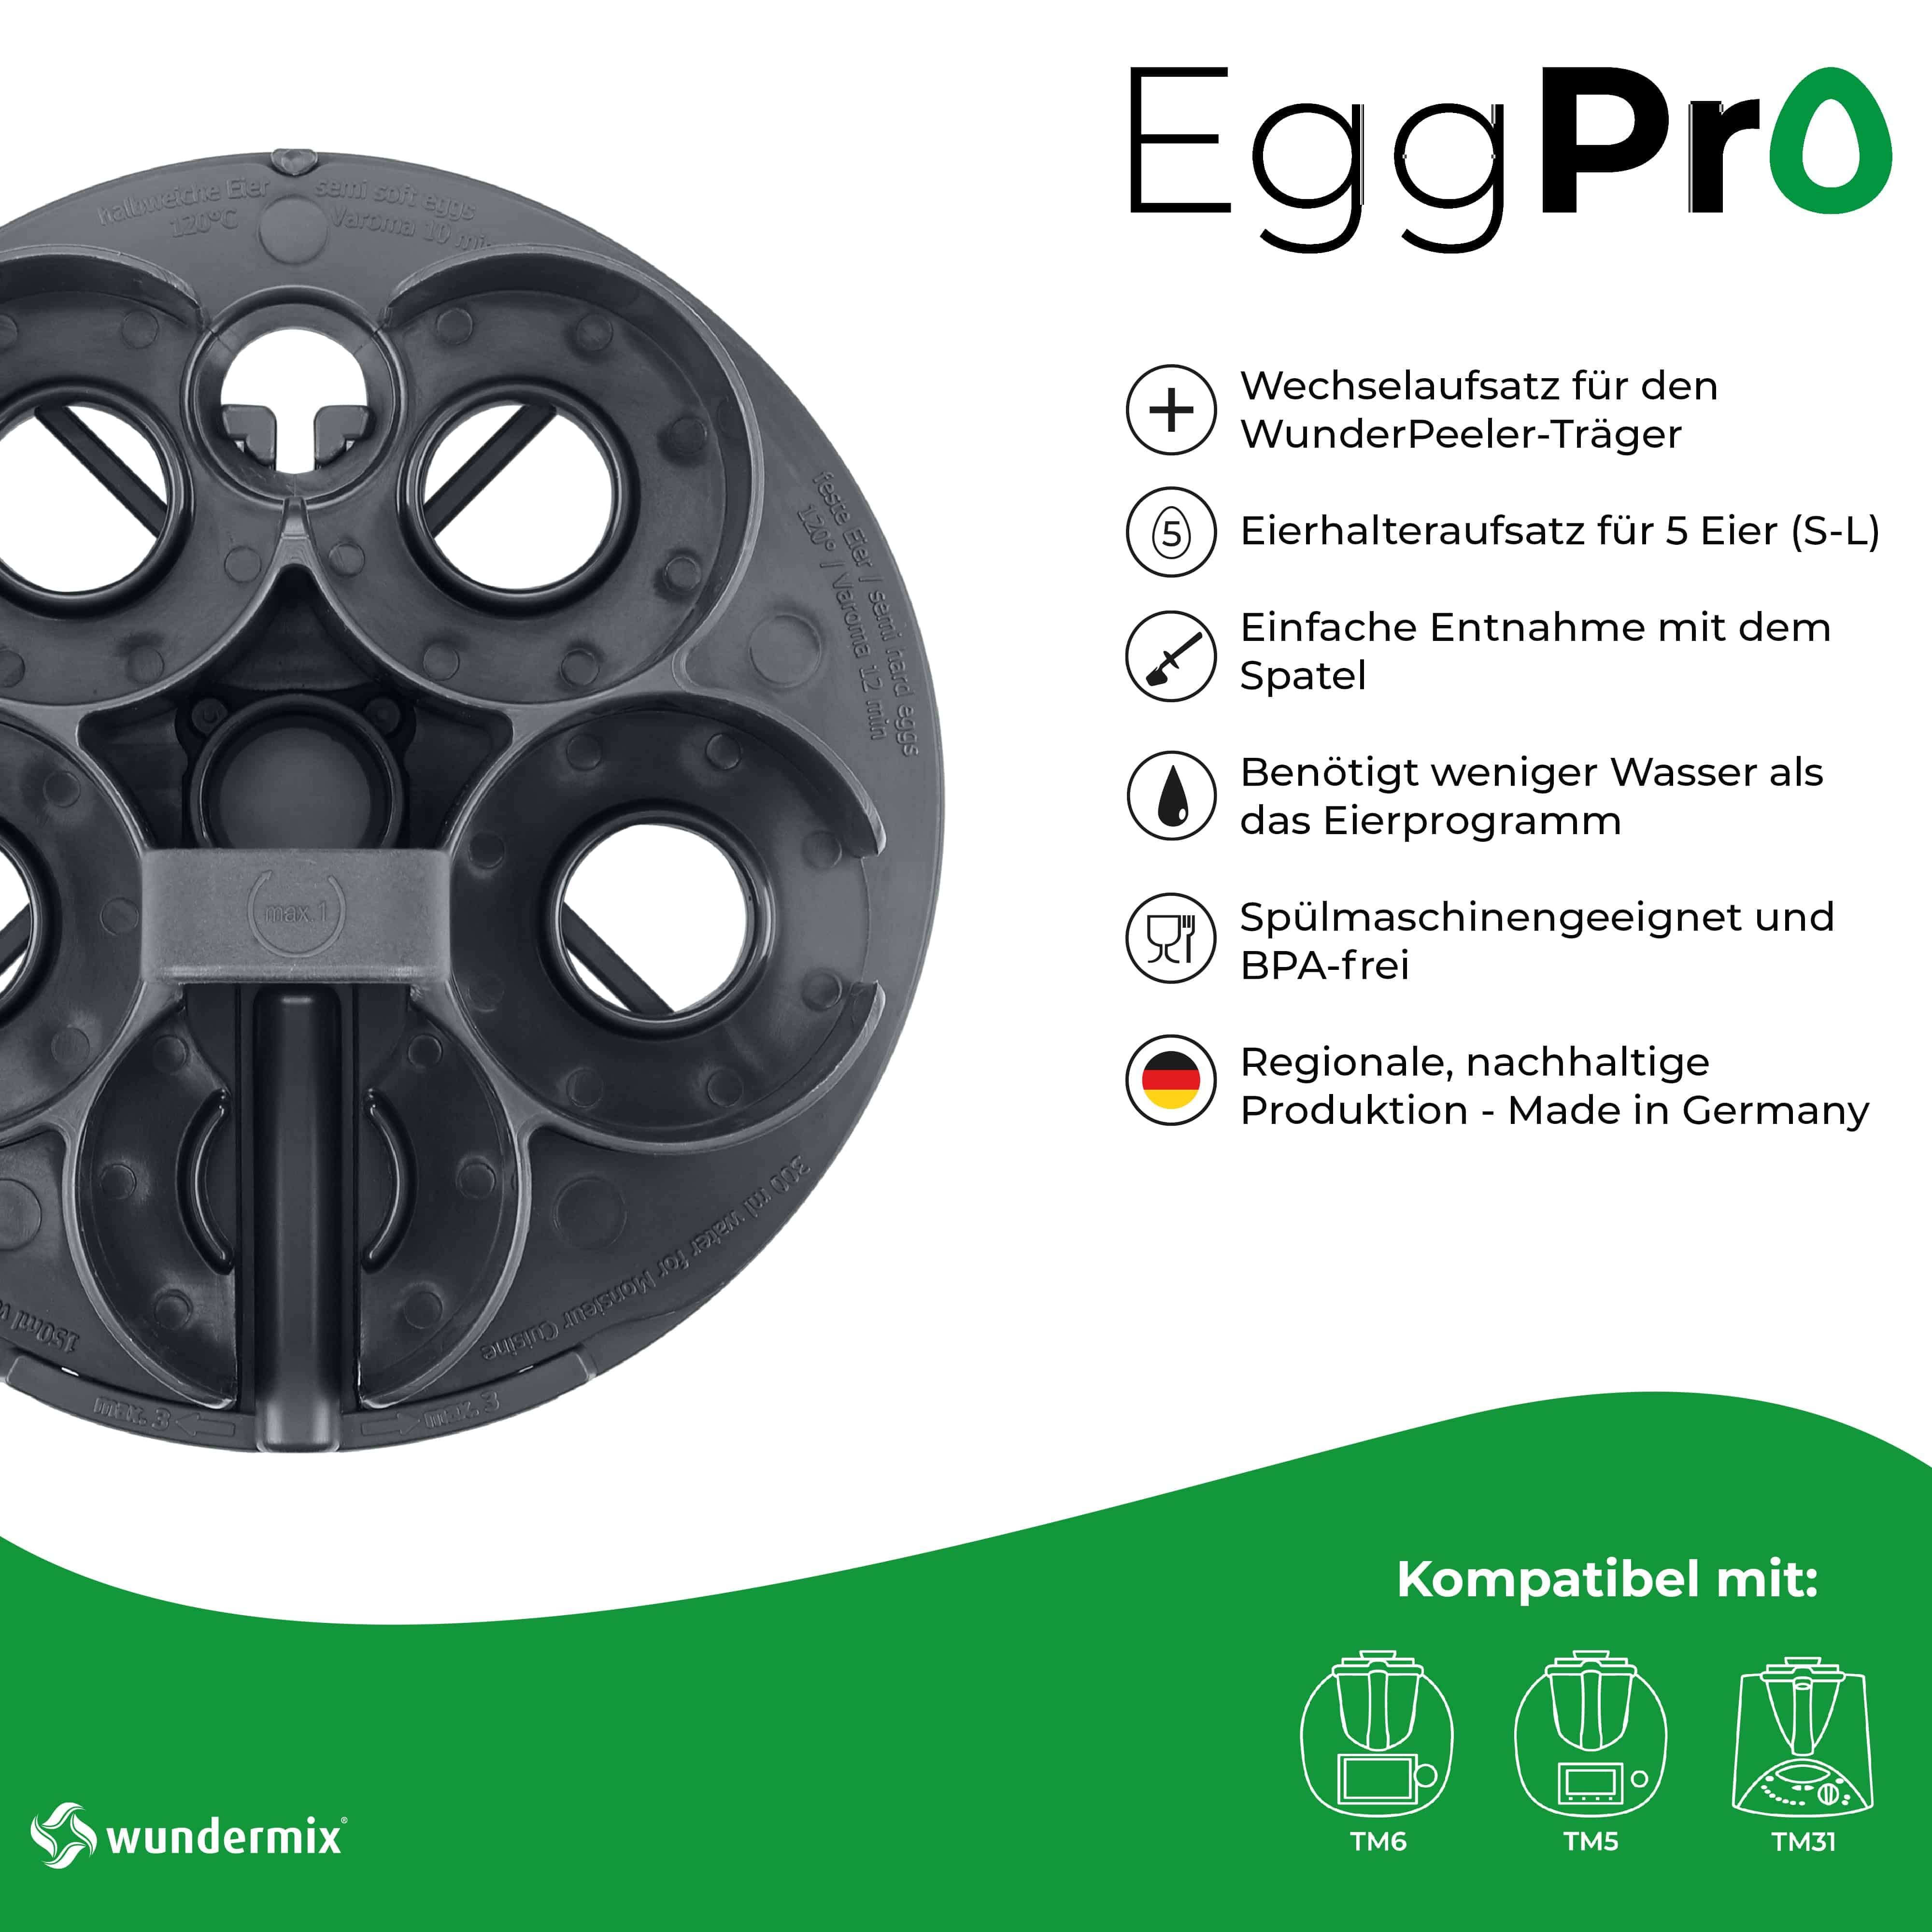 EggPro | Eierhalter-Aufsatz inkl. Träger für Thermomix TM6, TM5, TM31 - Wundermix GmbH